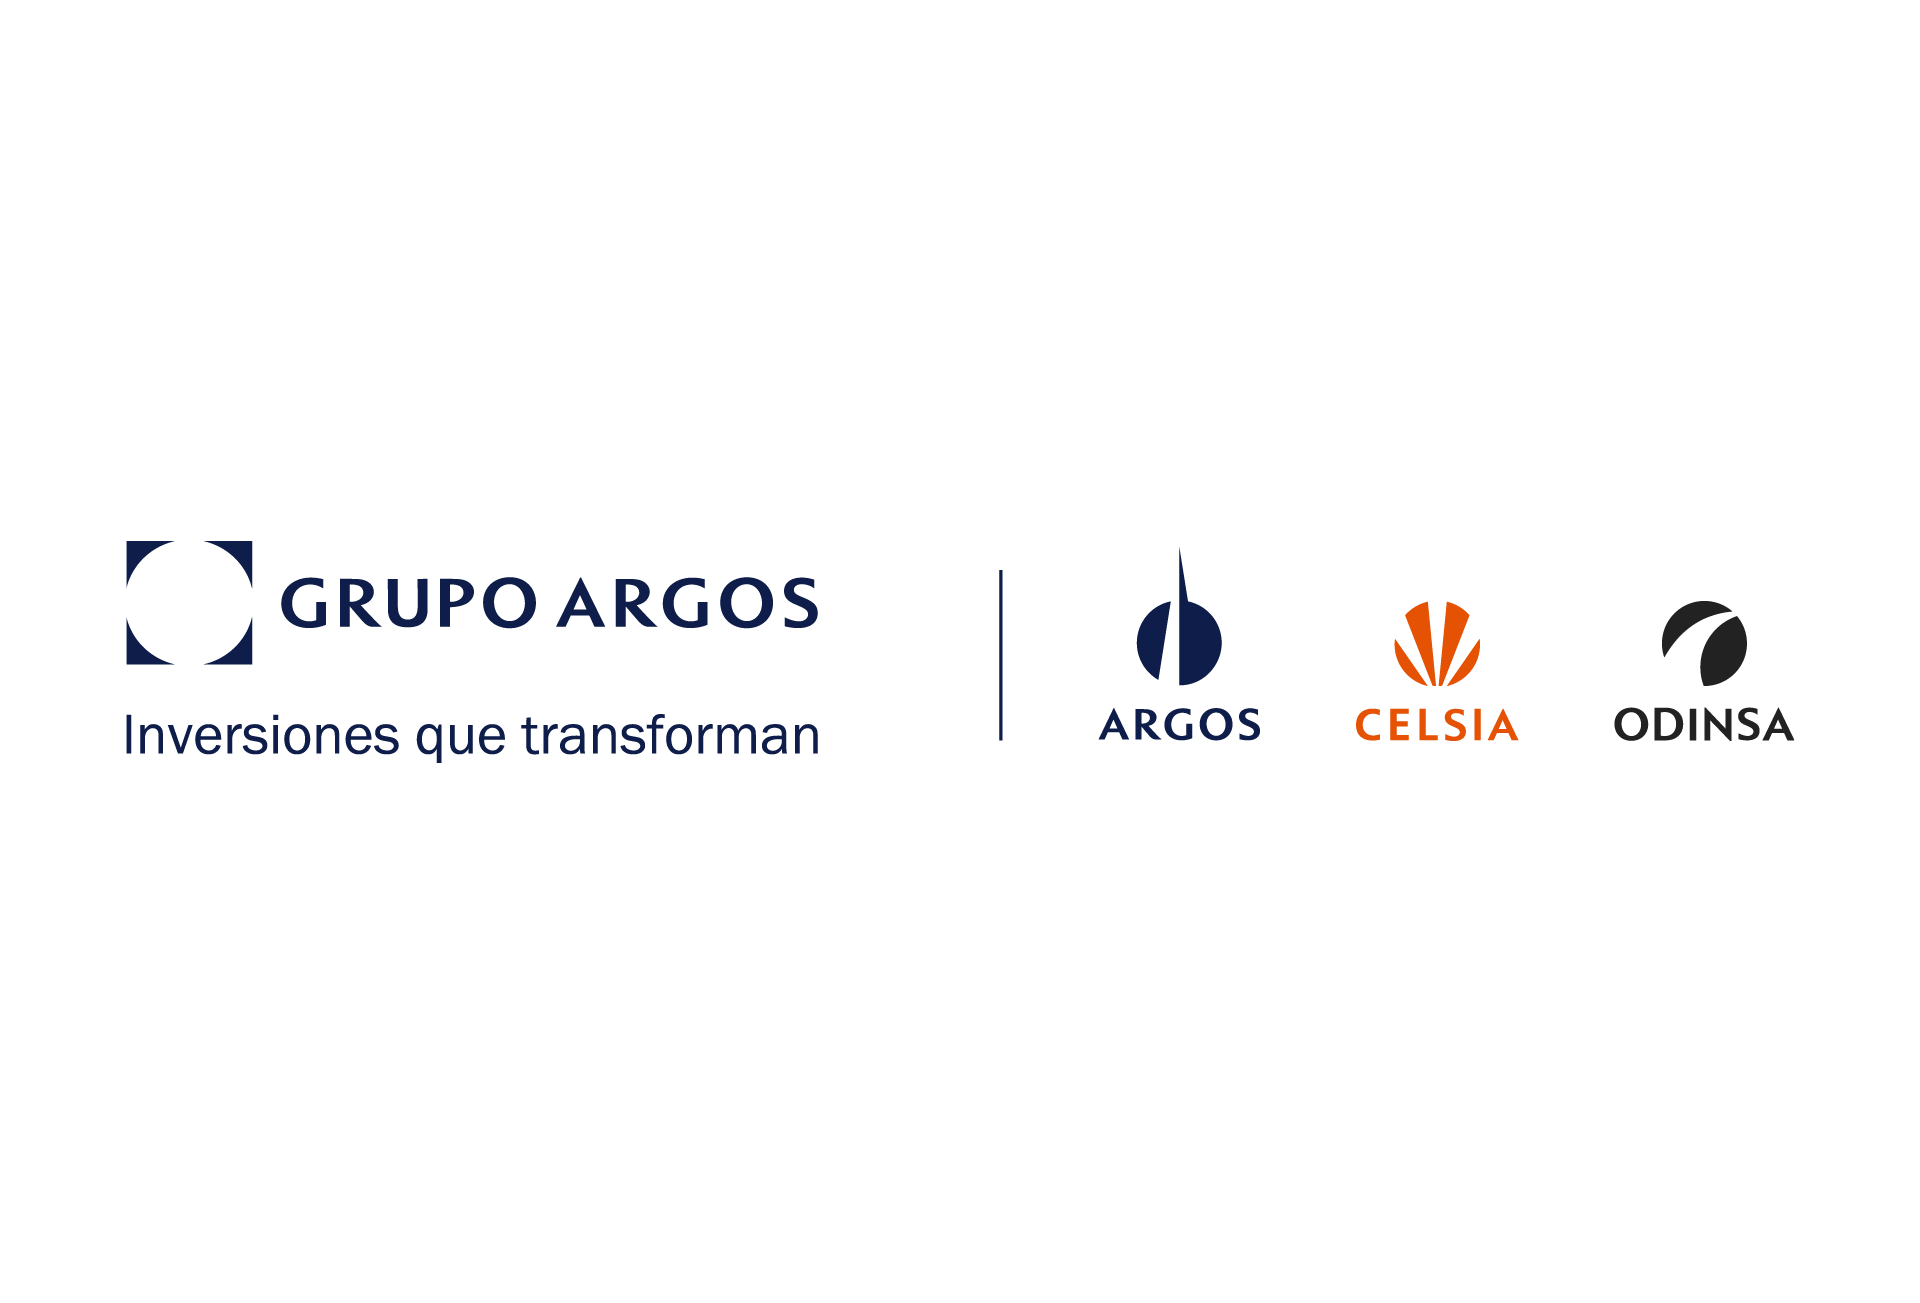 Estructura de logos horizontal Grupo Empresarial Argos